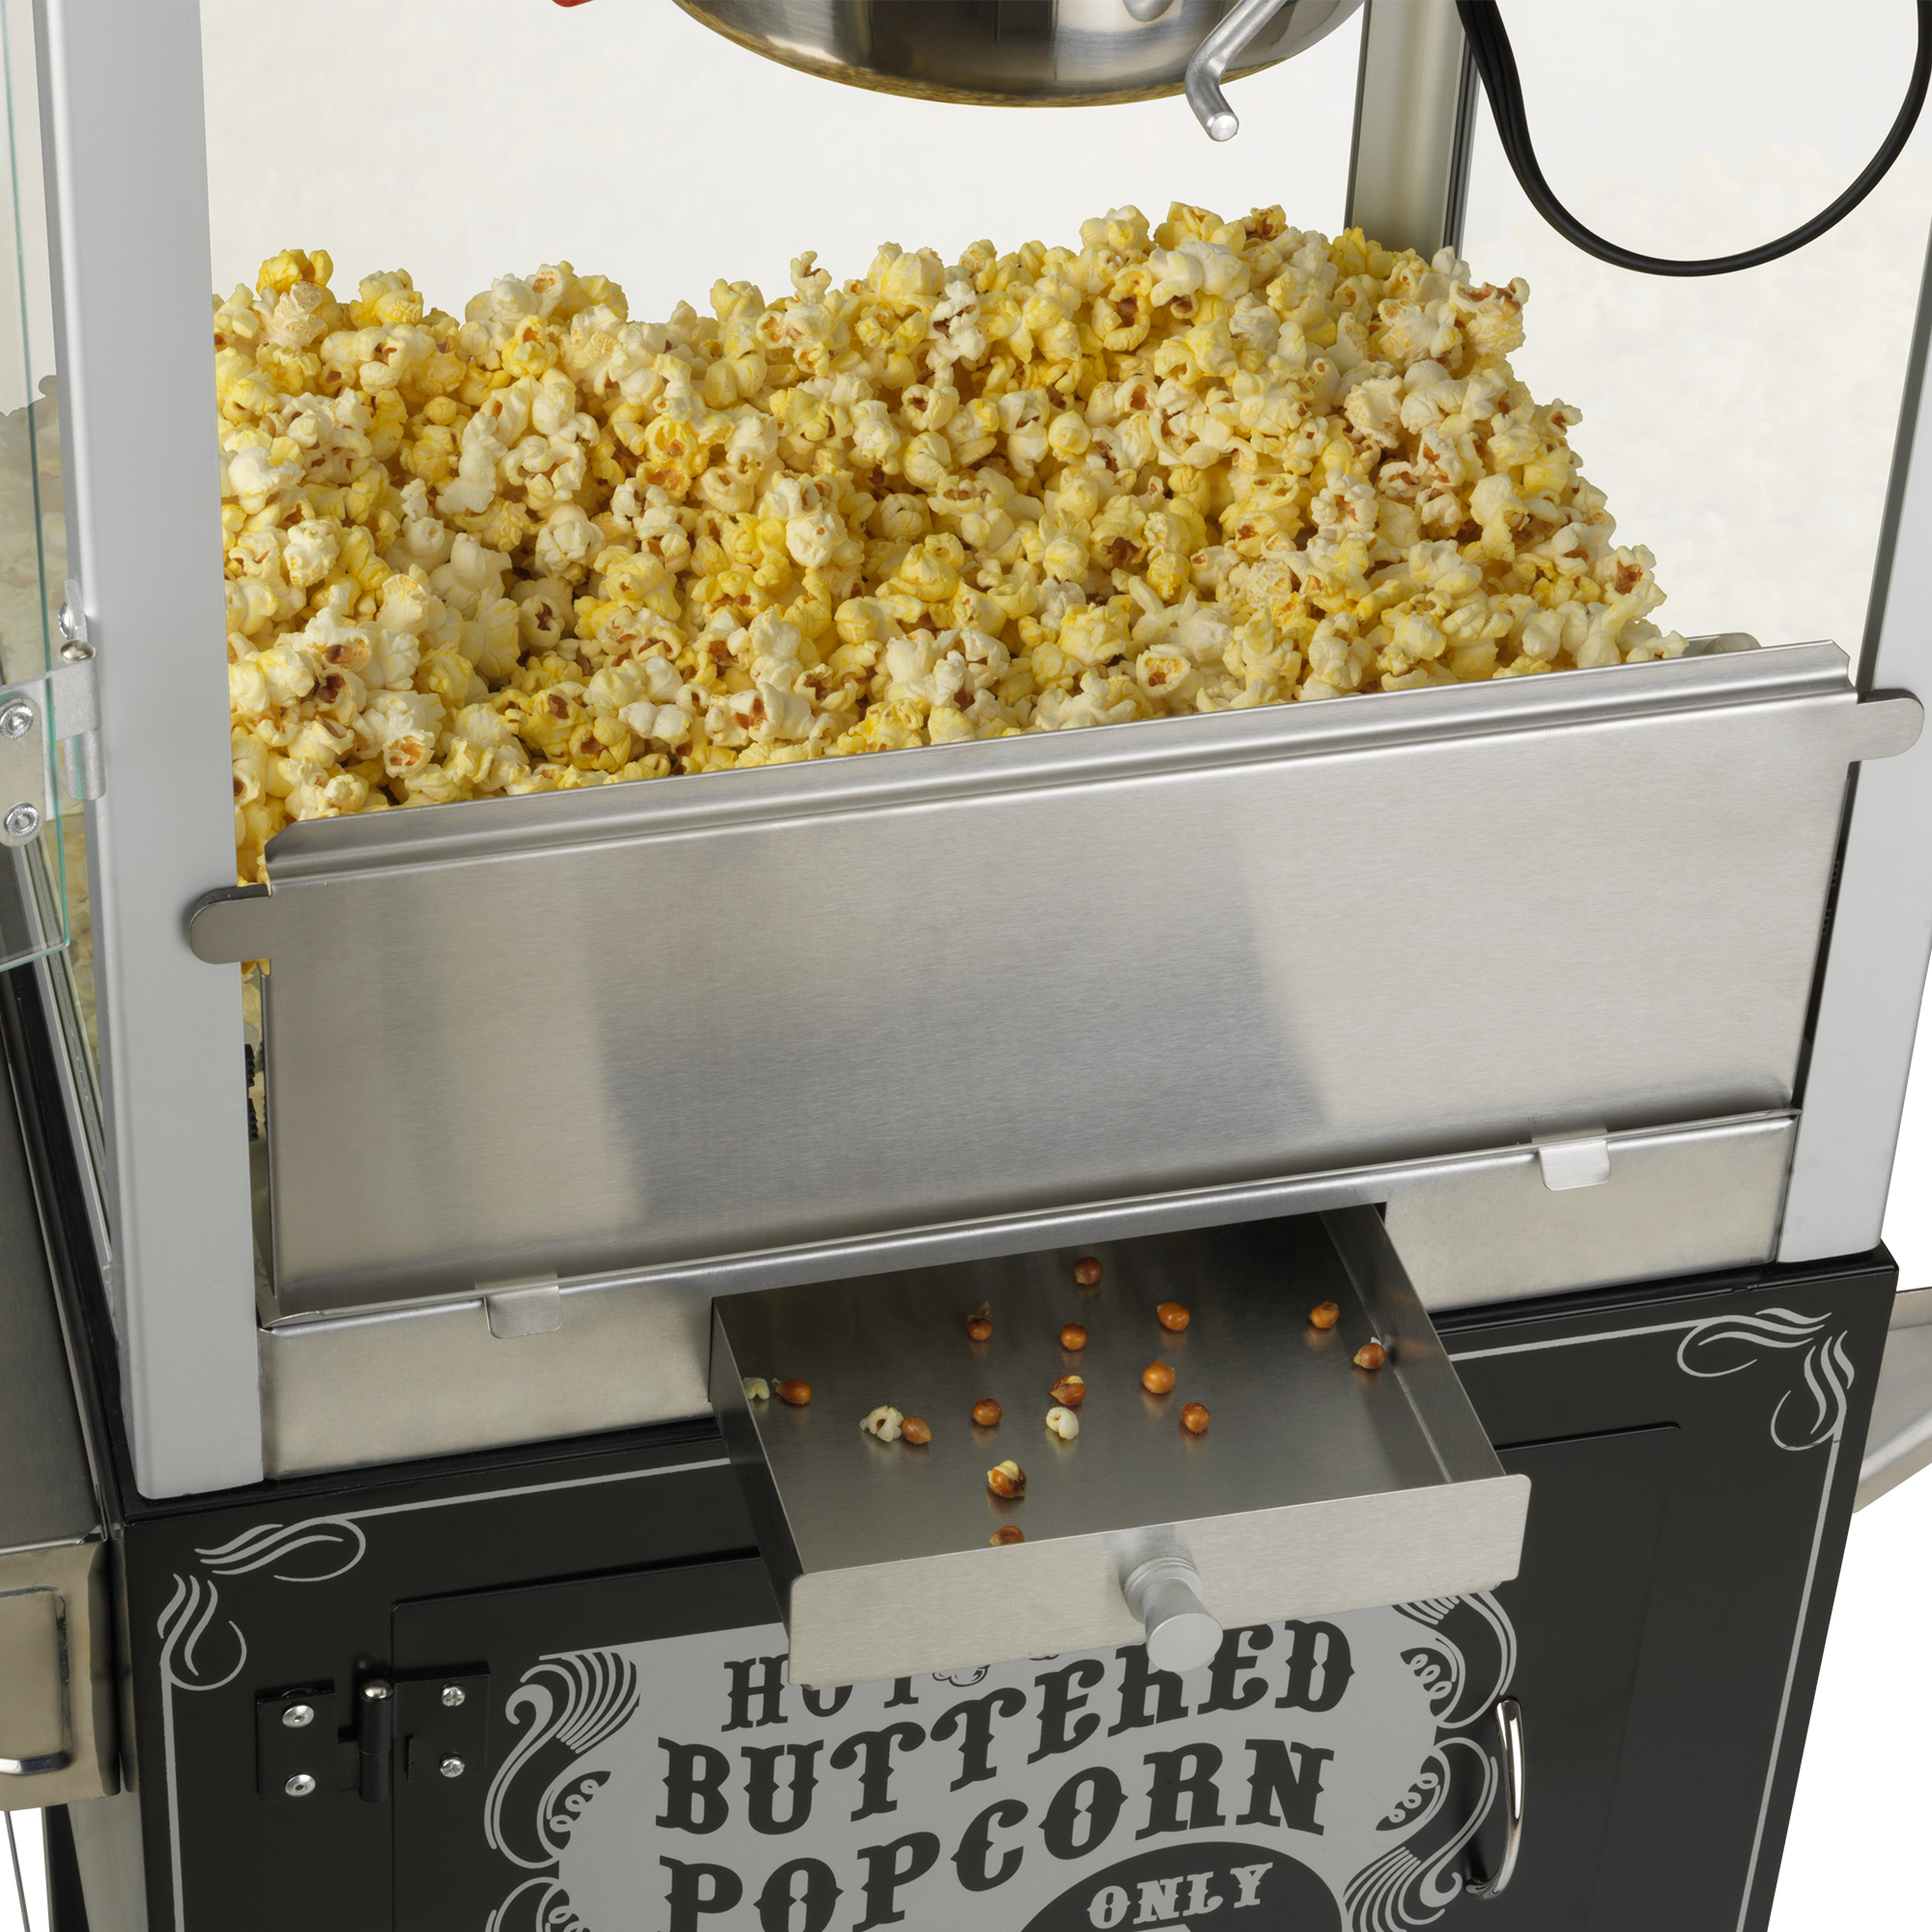 Popcorn Maker Black & Decker BXPC1100E 1100 W